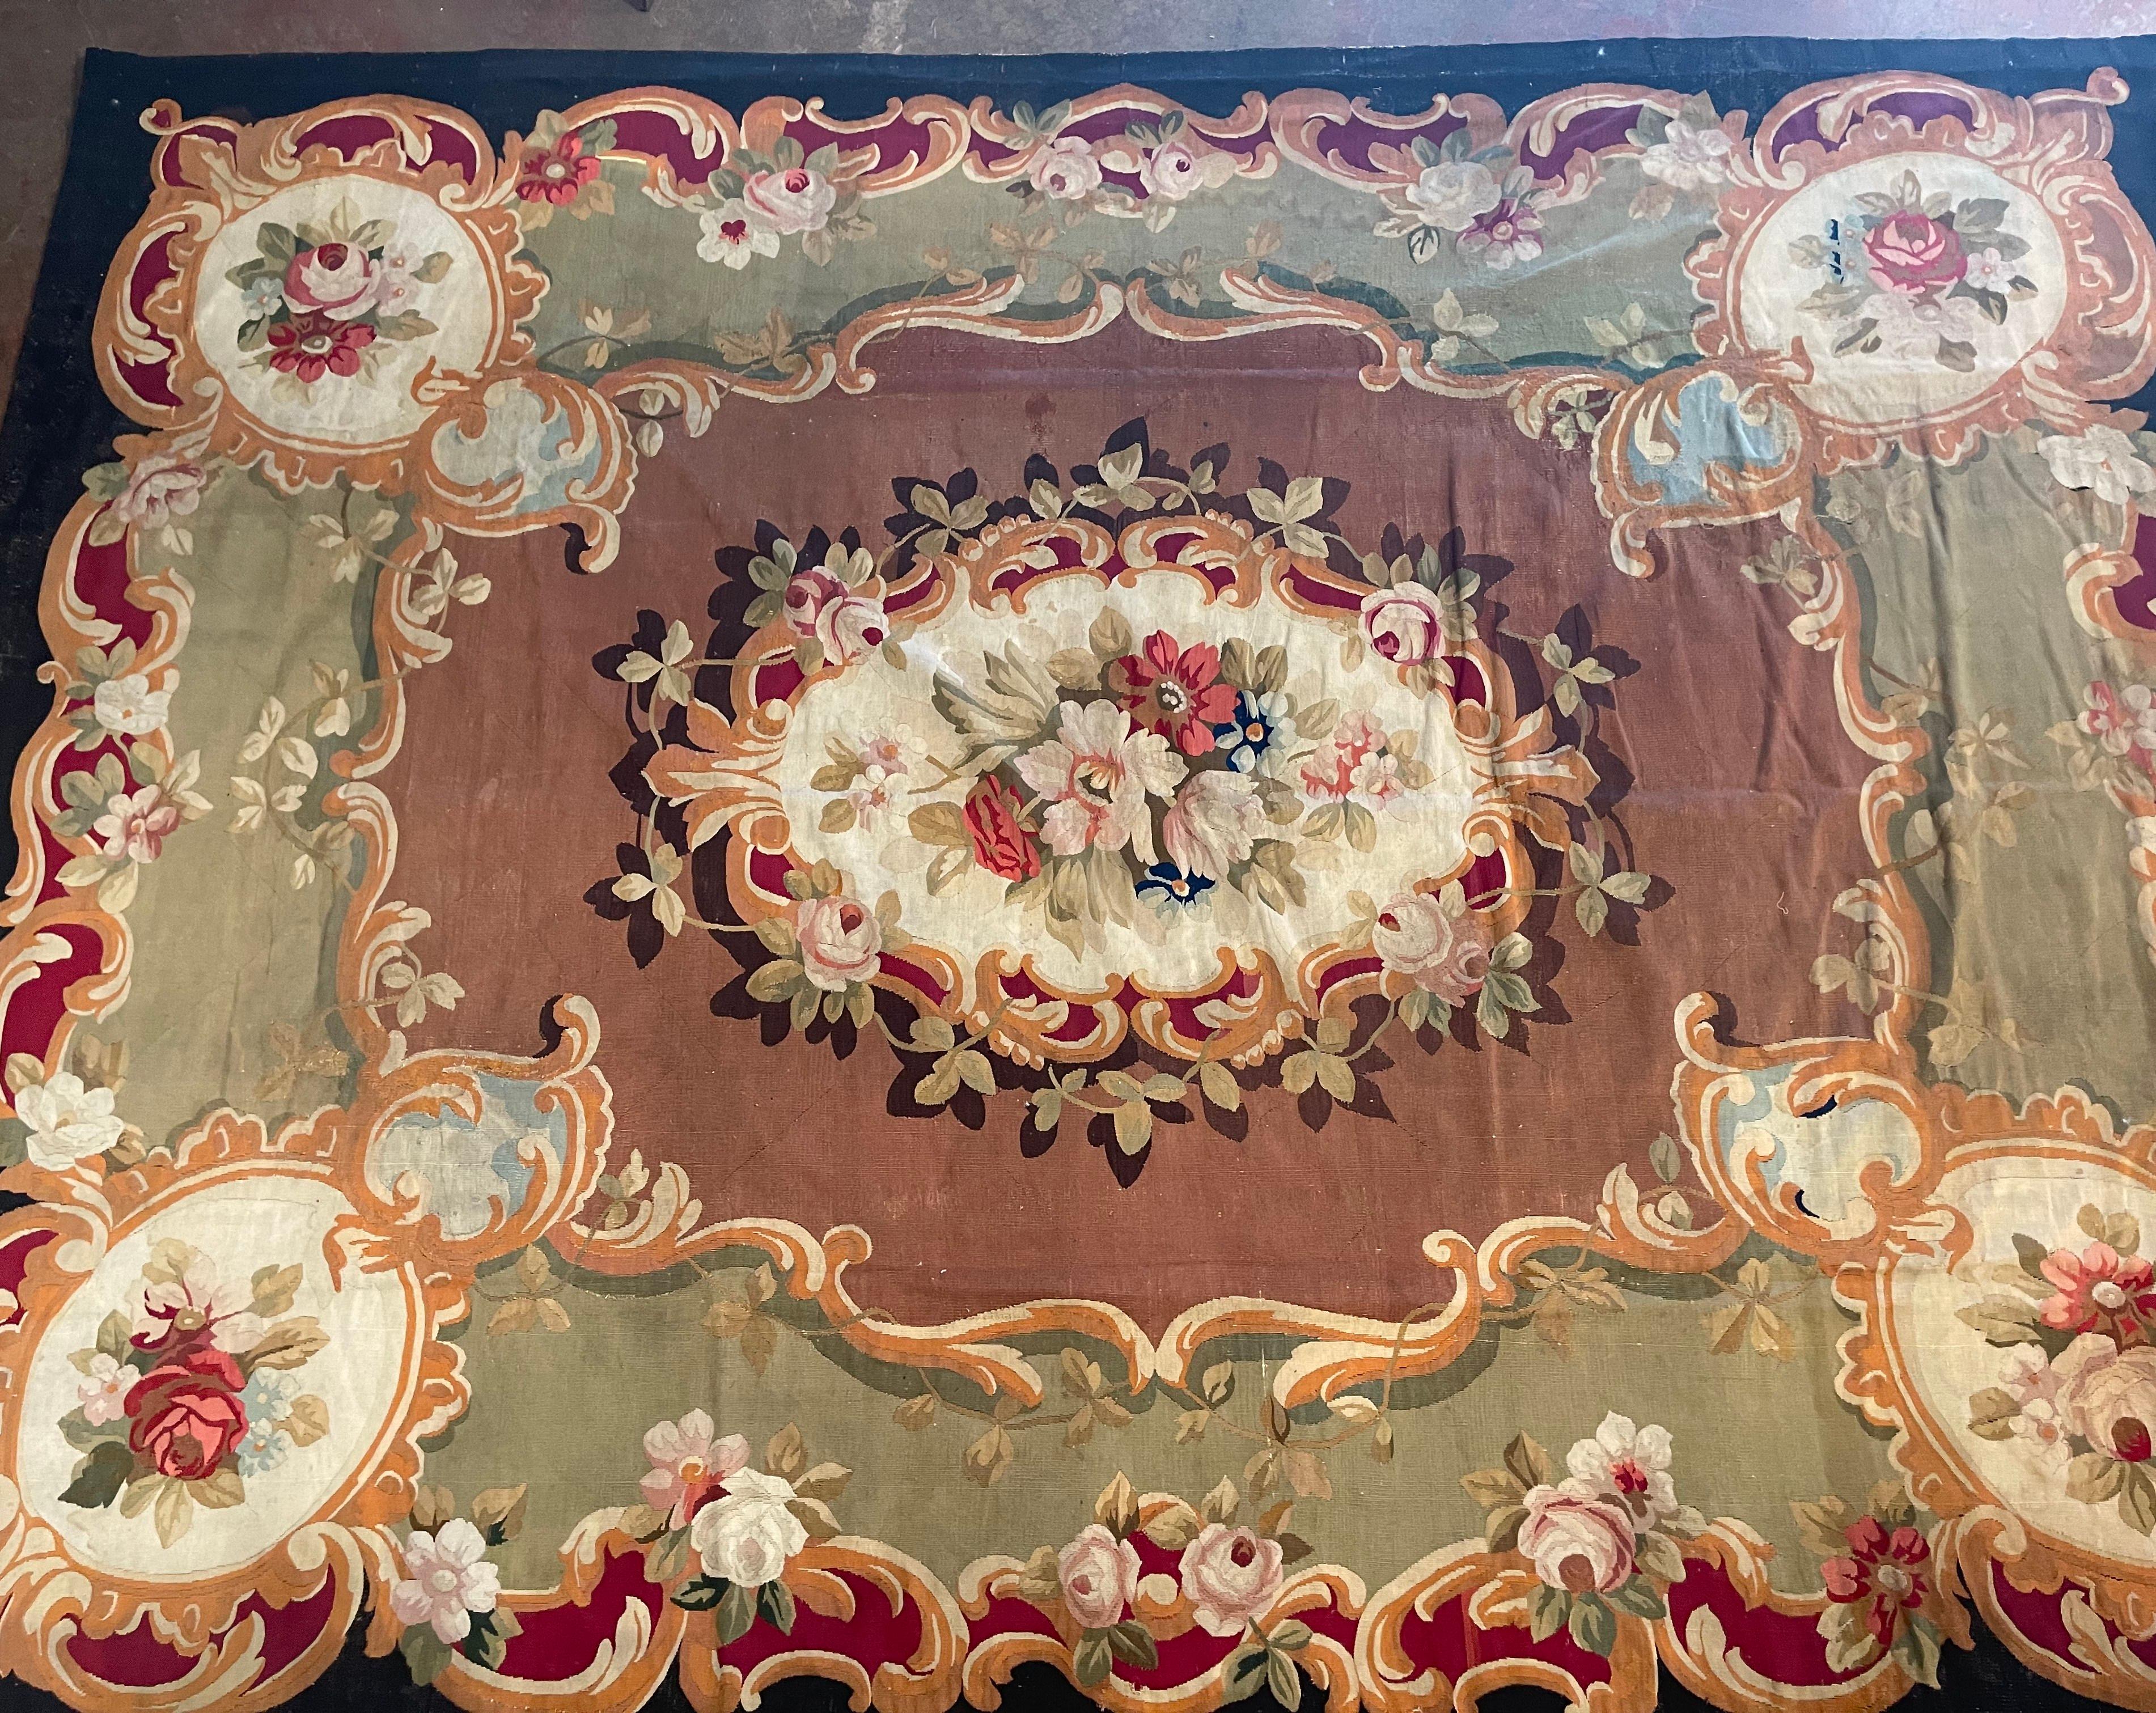 Décorez une salle à manger ou un salon avec ce tapis d'Aubusson ancien de belle facture, provenant directement d'un château du sud de la France. Tissé à la main dans la ville d'Aubusson vers 1870, ce tapis coloré de 13 x 10 est orné de motifs